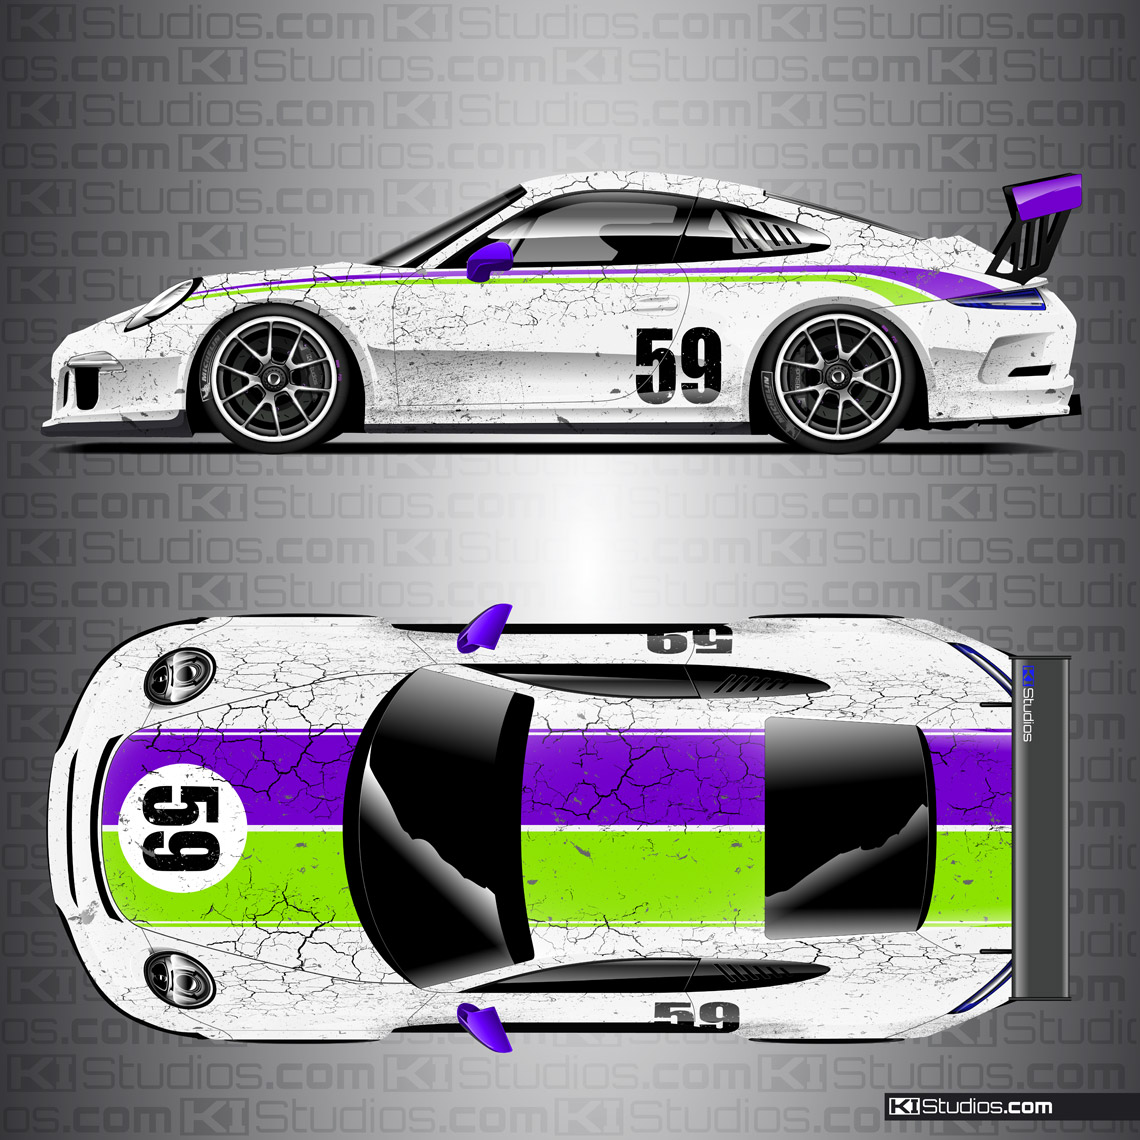 Porsche 991 GT3 Cup Car Livery by KI Studios - White, Purple, Lime Green